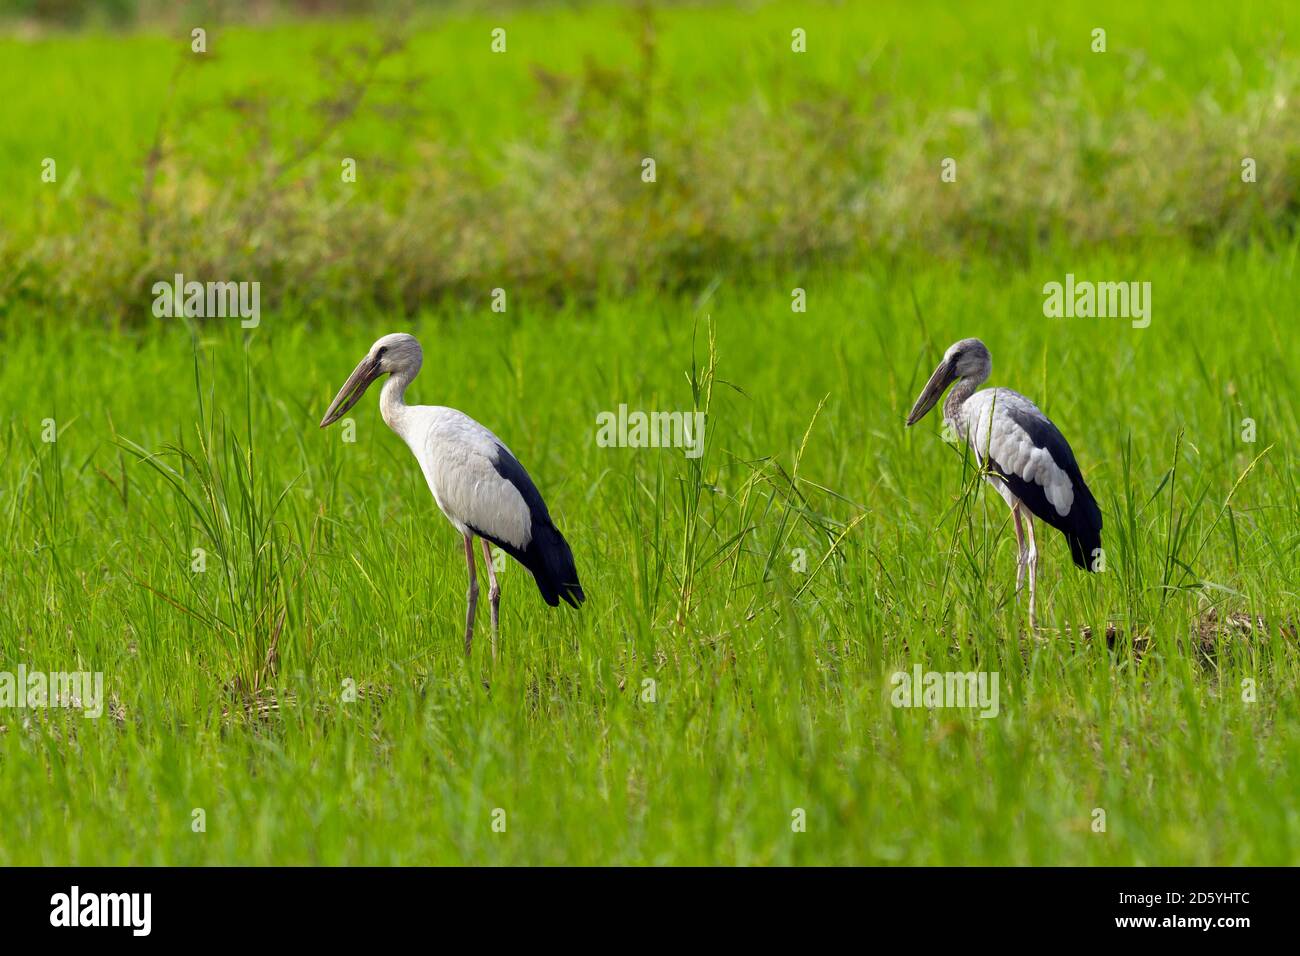 Tailandia, el Parque Nacional Mae Wong, la cigüeña de pico abierto de Asia y el pájaro joven, Anastomus oscitans Foto de stock